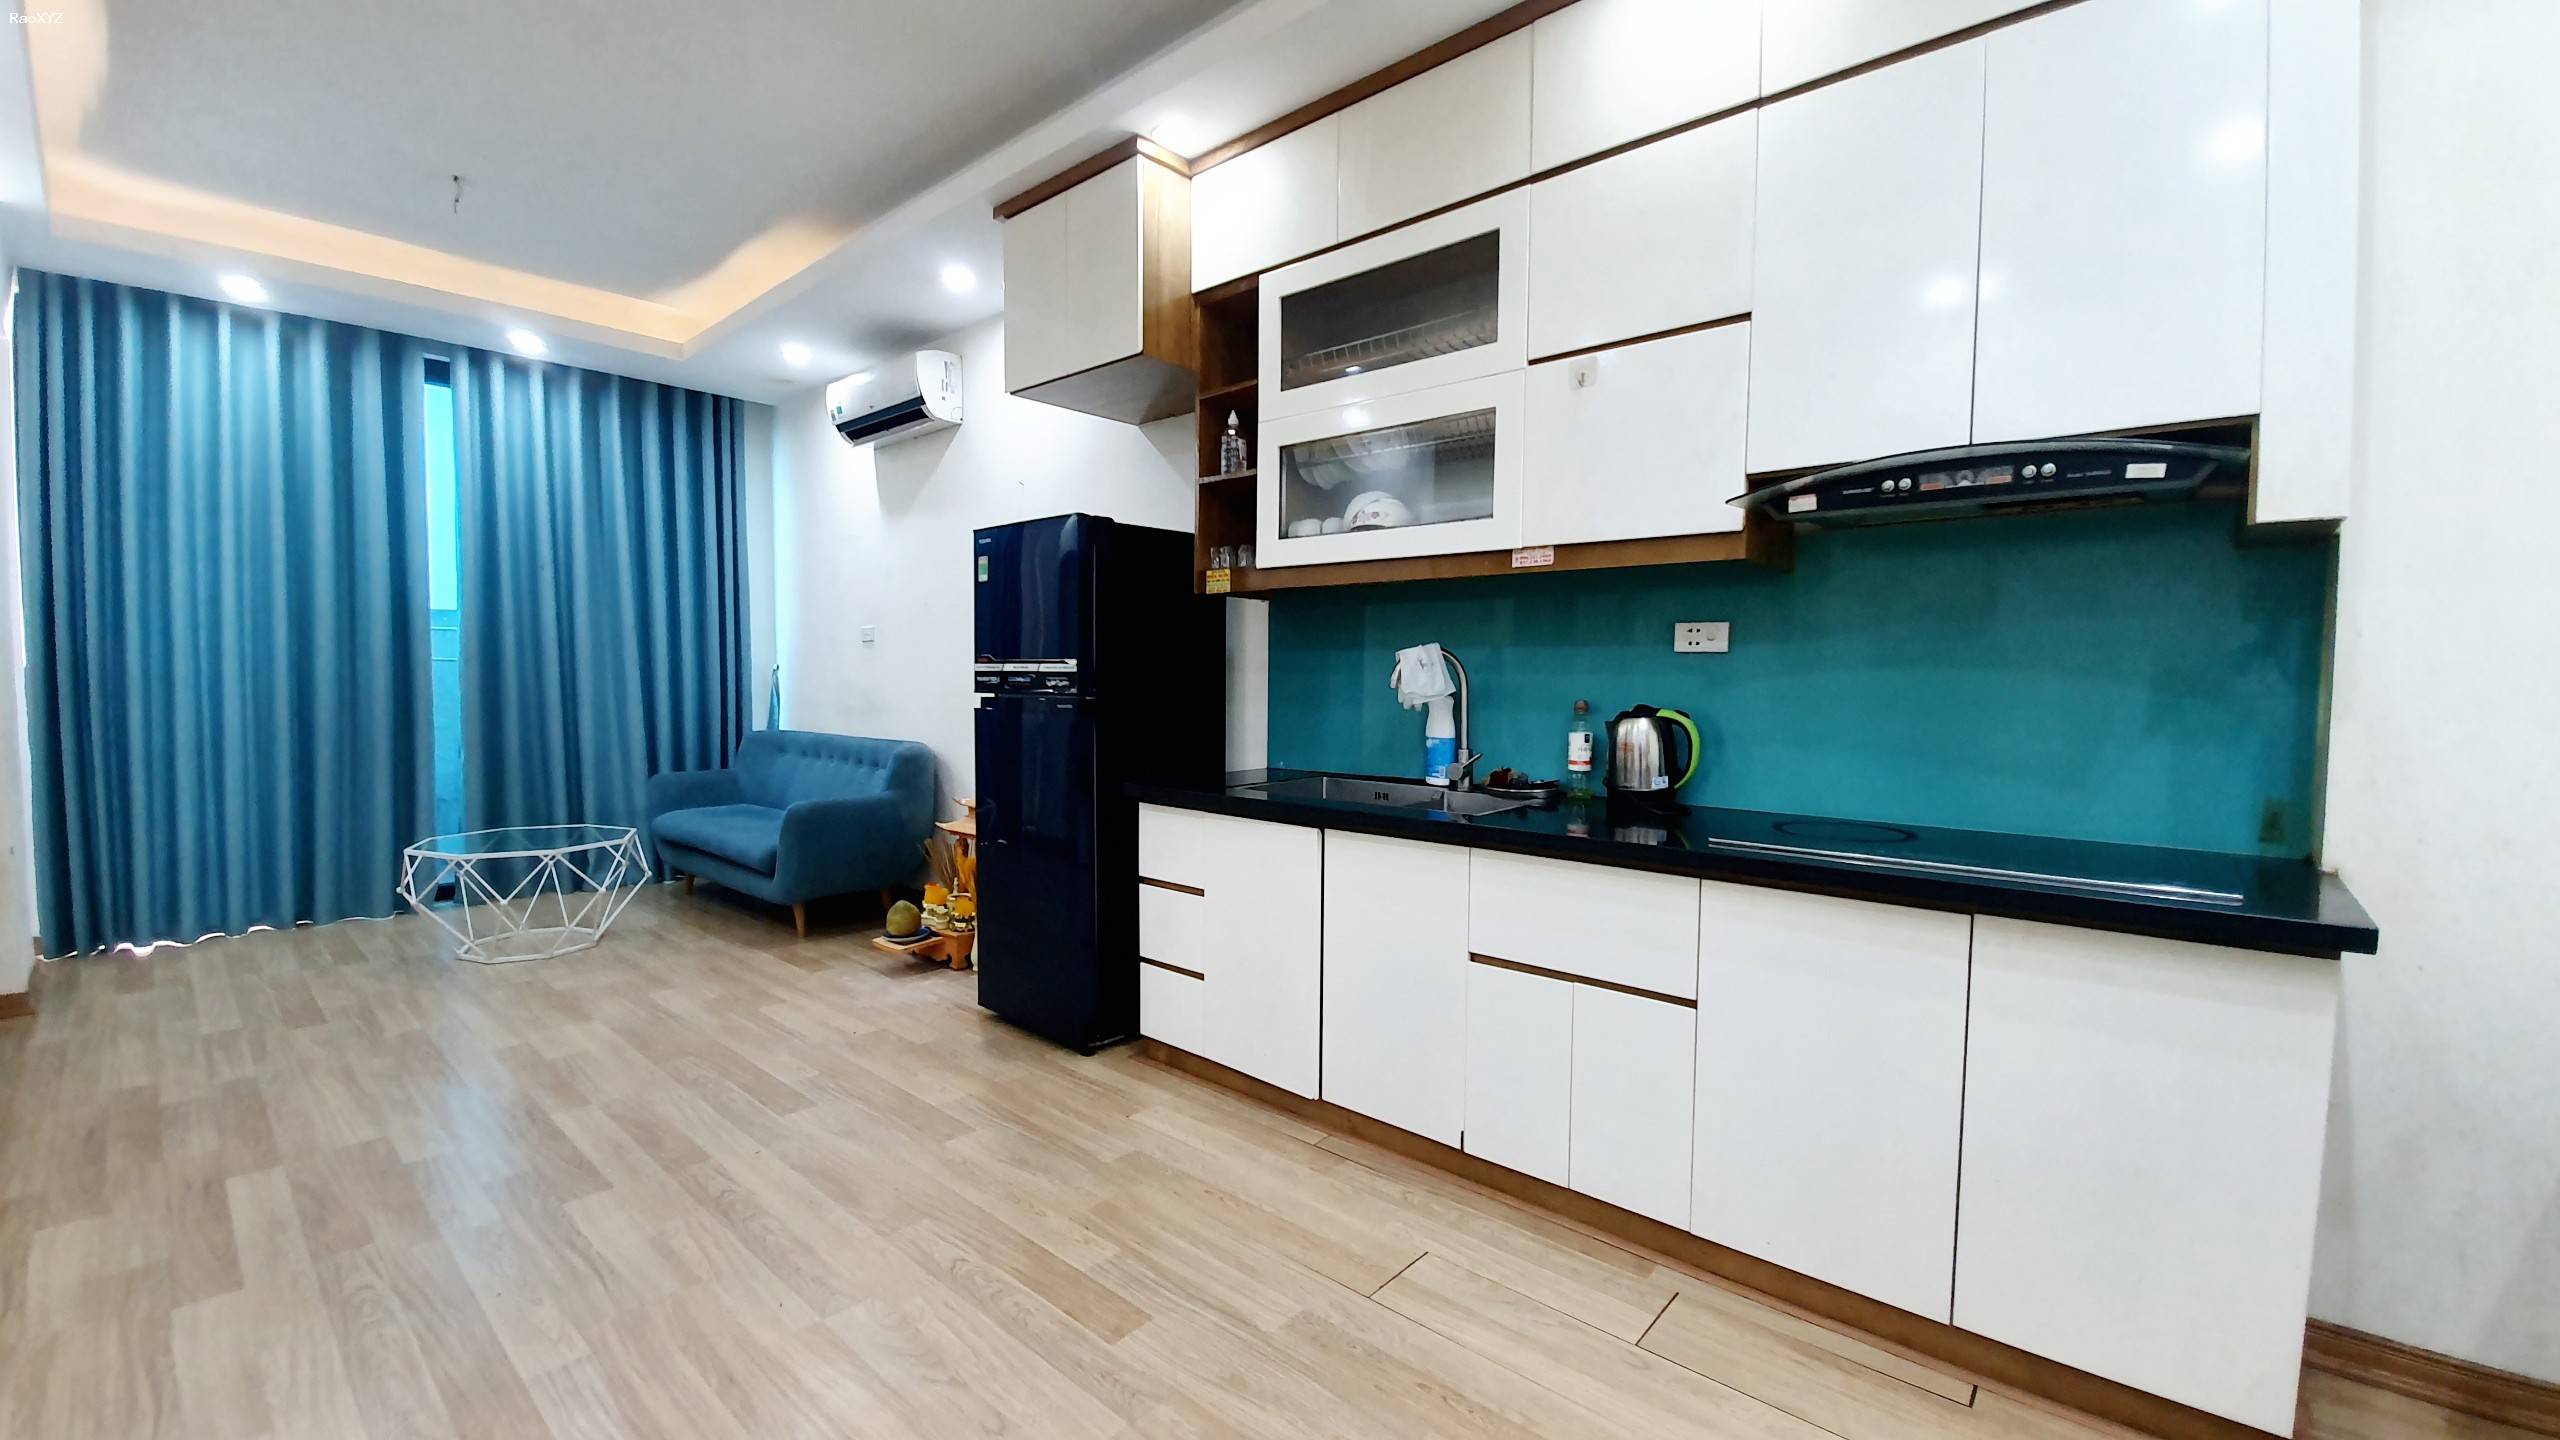 Cần bán căn hộ 2 PN full nội thất, view Hồ giá 910tr tại KĐT Thanh Hà Cienco 5